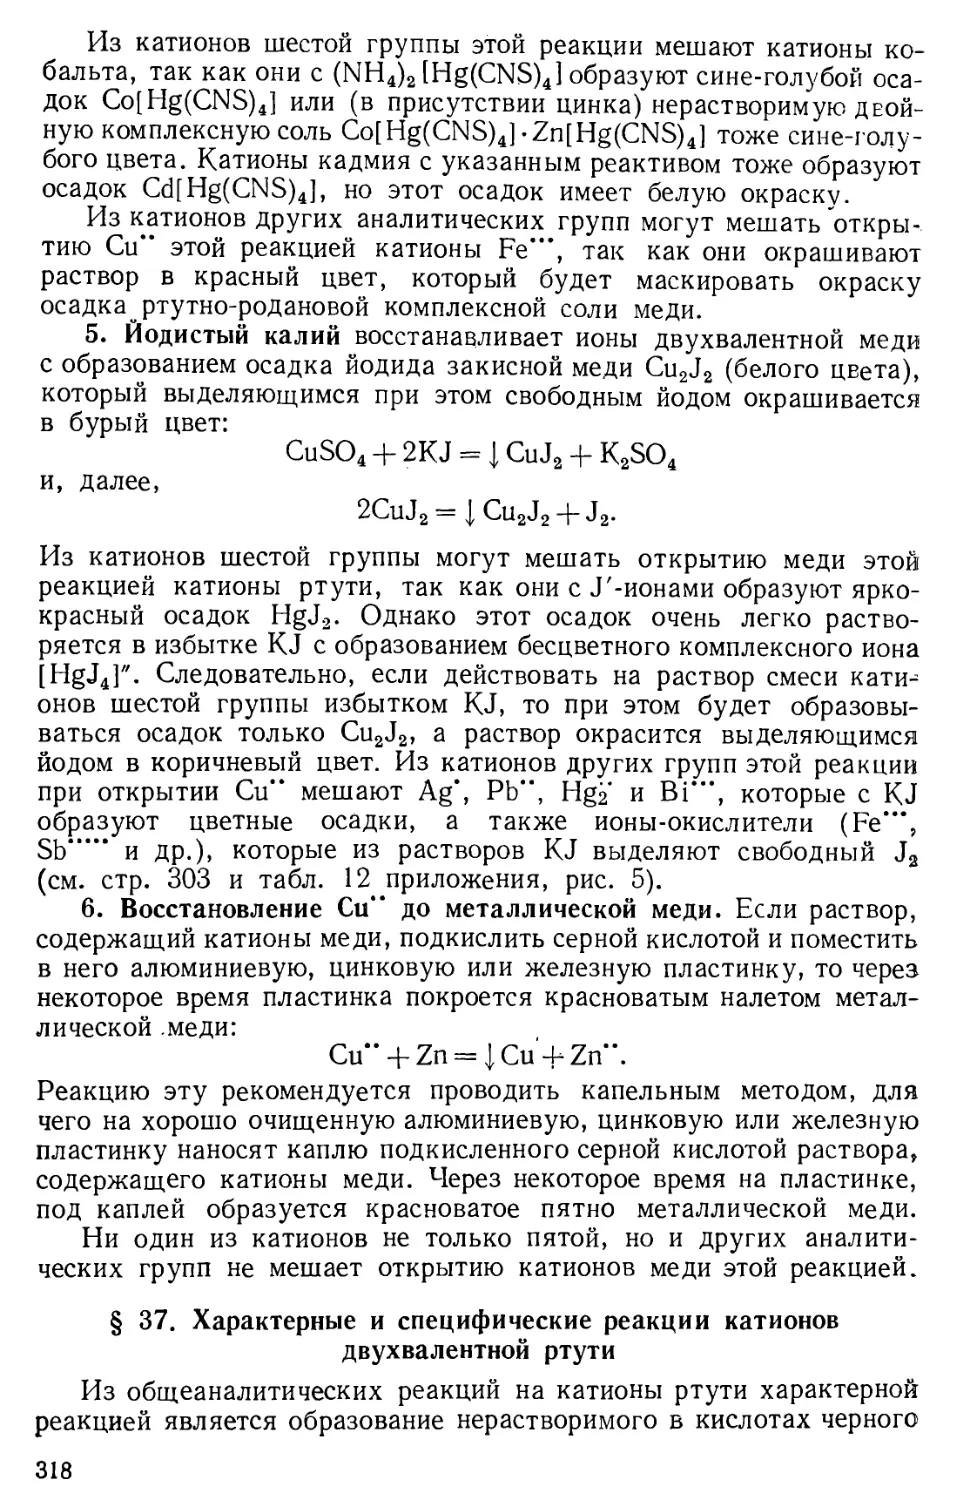 § 37. Характерные и специфические реакции катионов двухвалентной ртути